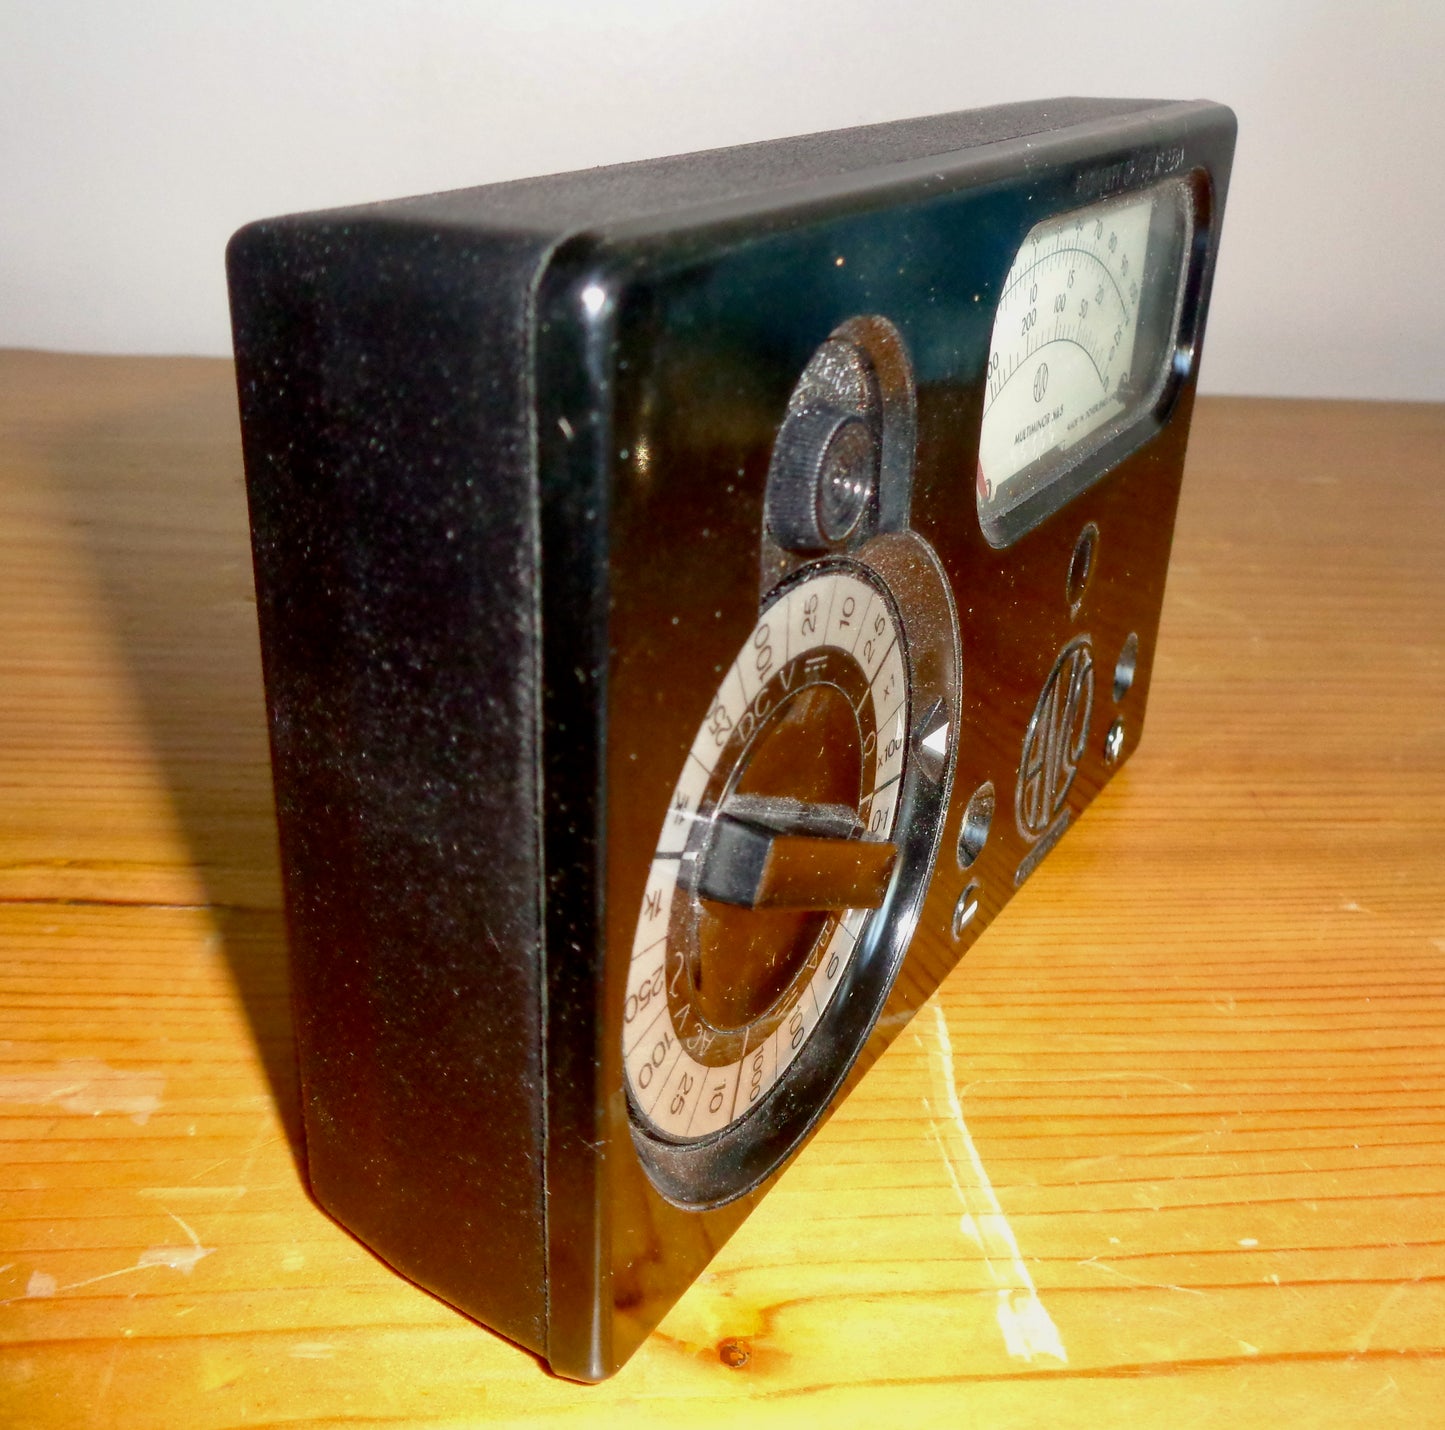 Vintage Bakelite Fronted AVO MultiMinor MK5 Multimeter. Ex BBC Equipment In Its Original Transit Case